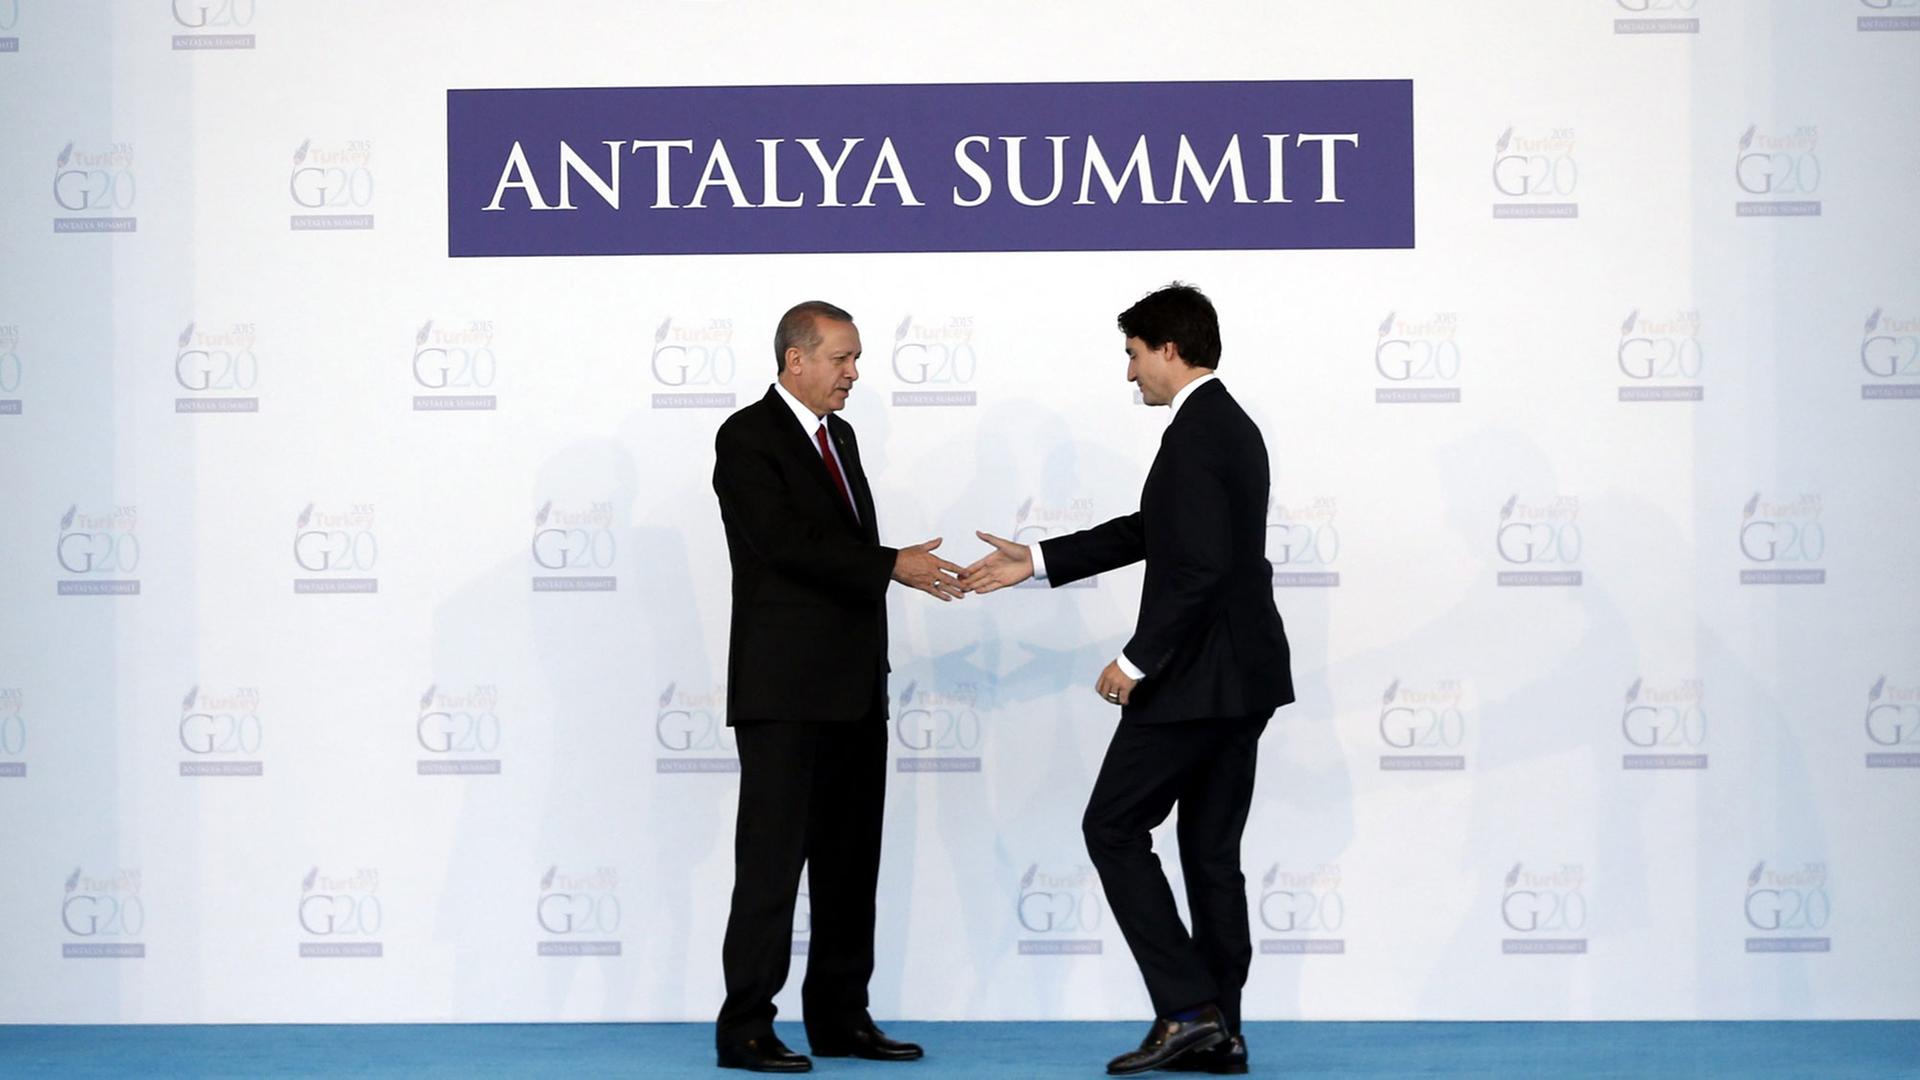 Der türkische Präsident Recep Tayyip Erdogan (links) begrüßt den kanadischen Premierminister Justin Trudeau beim G20-Gipfel in Antalya, Türkei